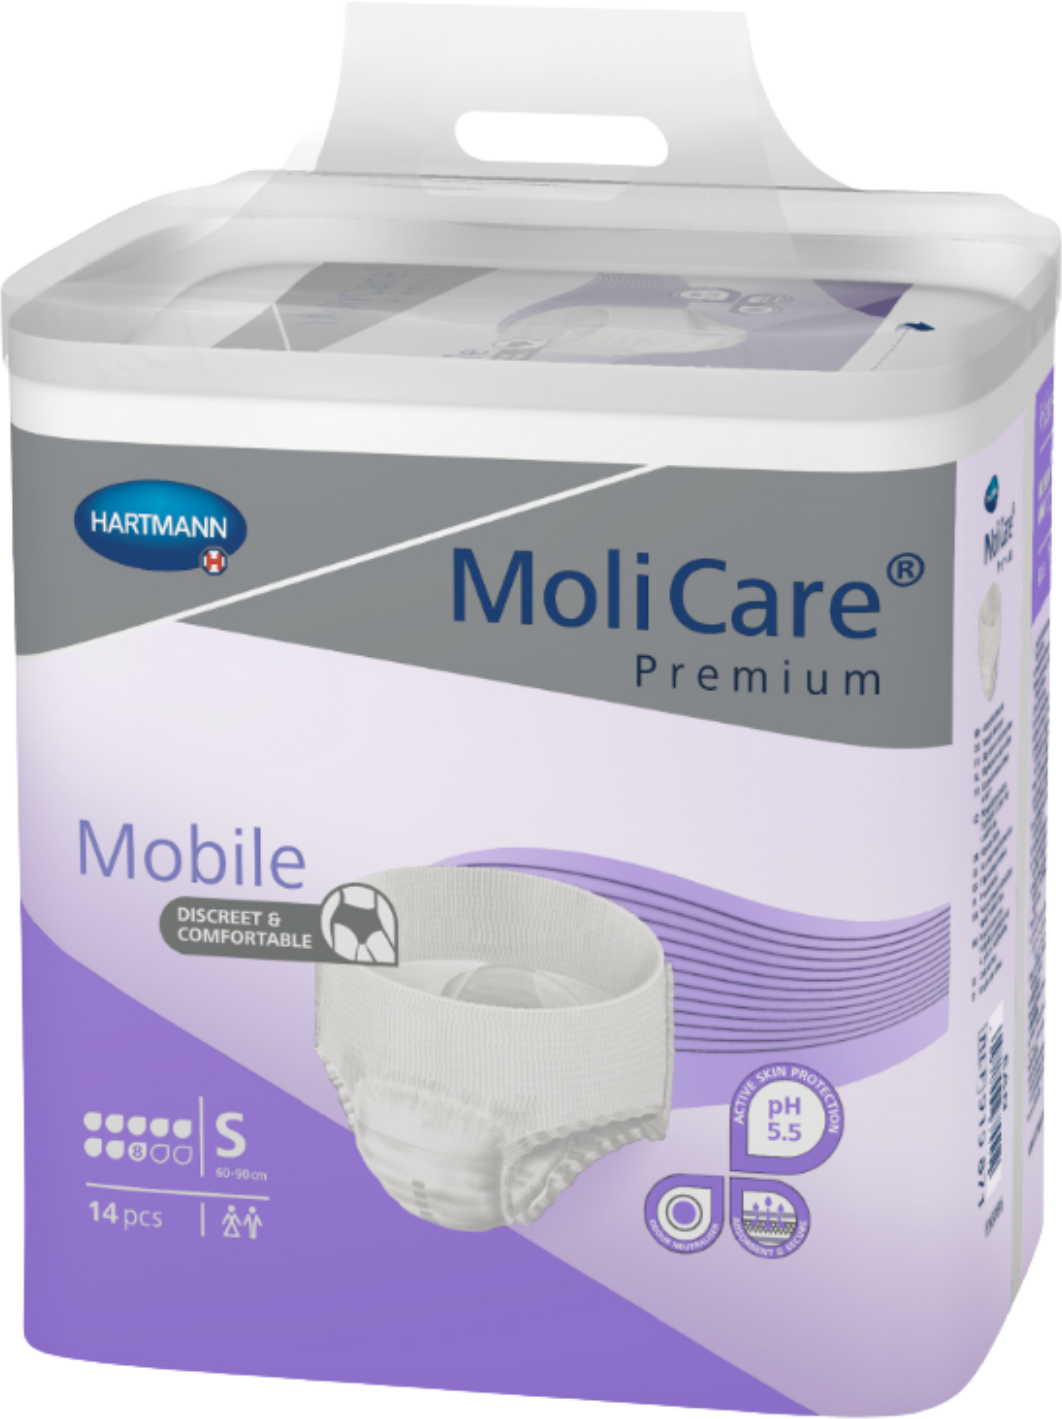 MoliCare Premium Mobile 8 Tropfen L / Beutel 14 Stück